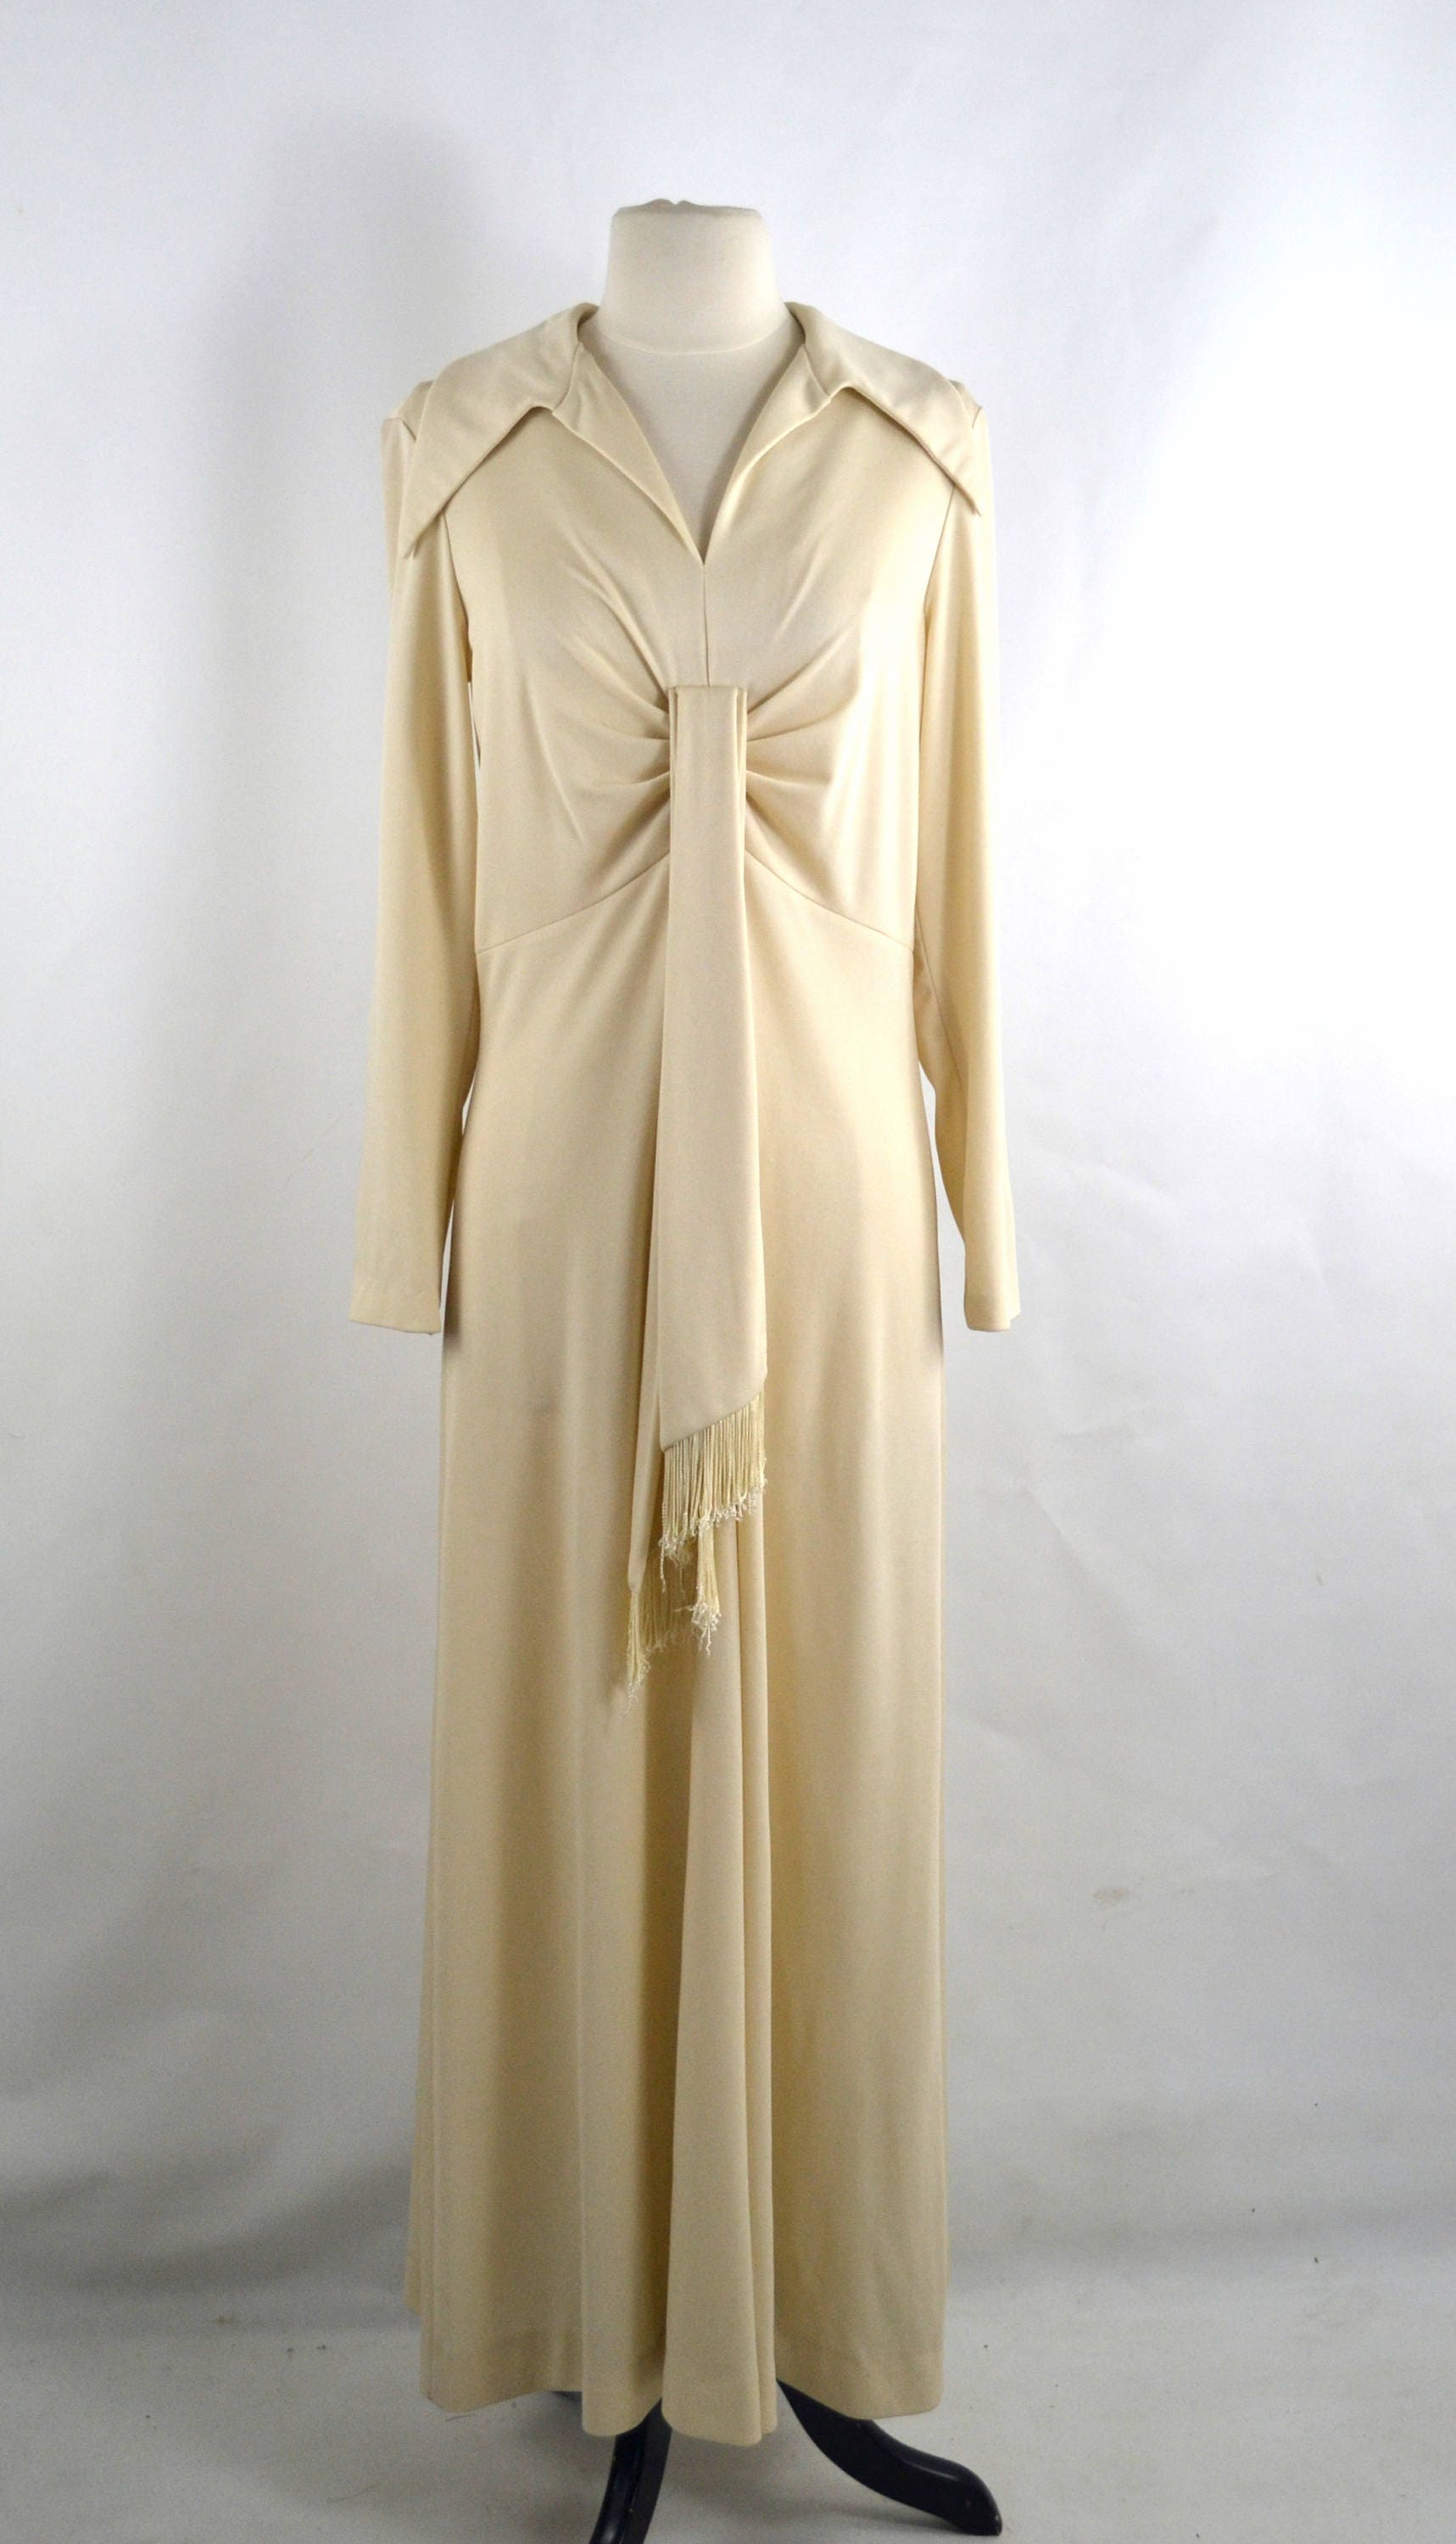 1970s Ivory Empire Waist Maxi/full Length Dress by Kay Windsor | Etsy